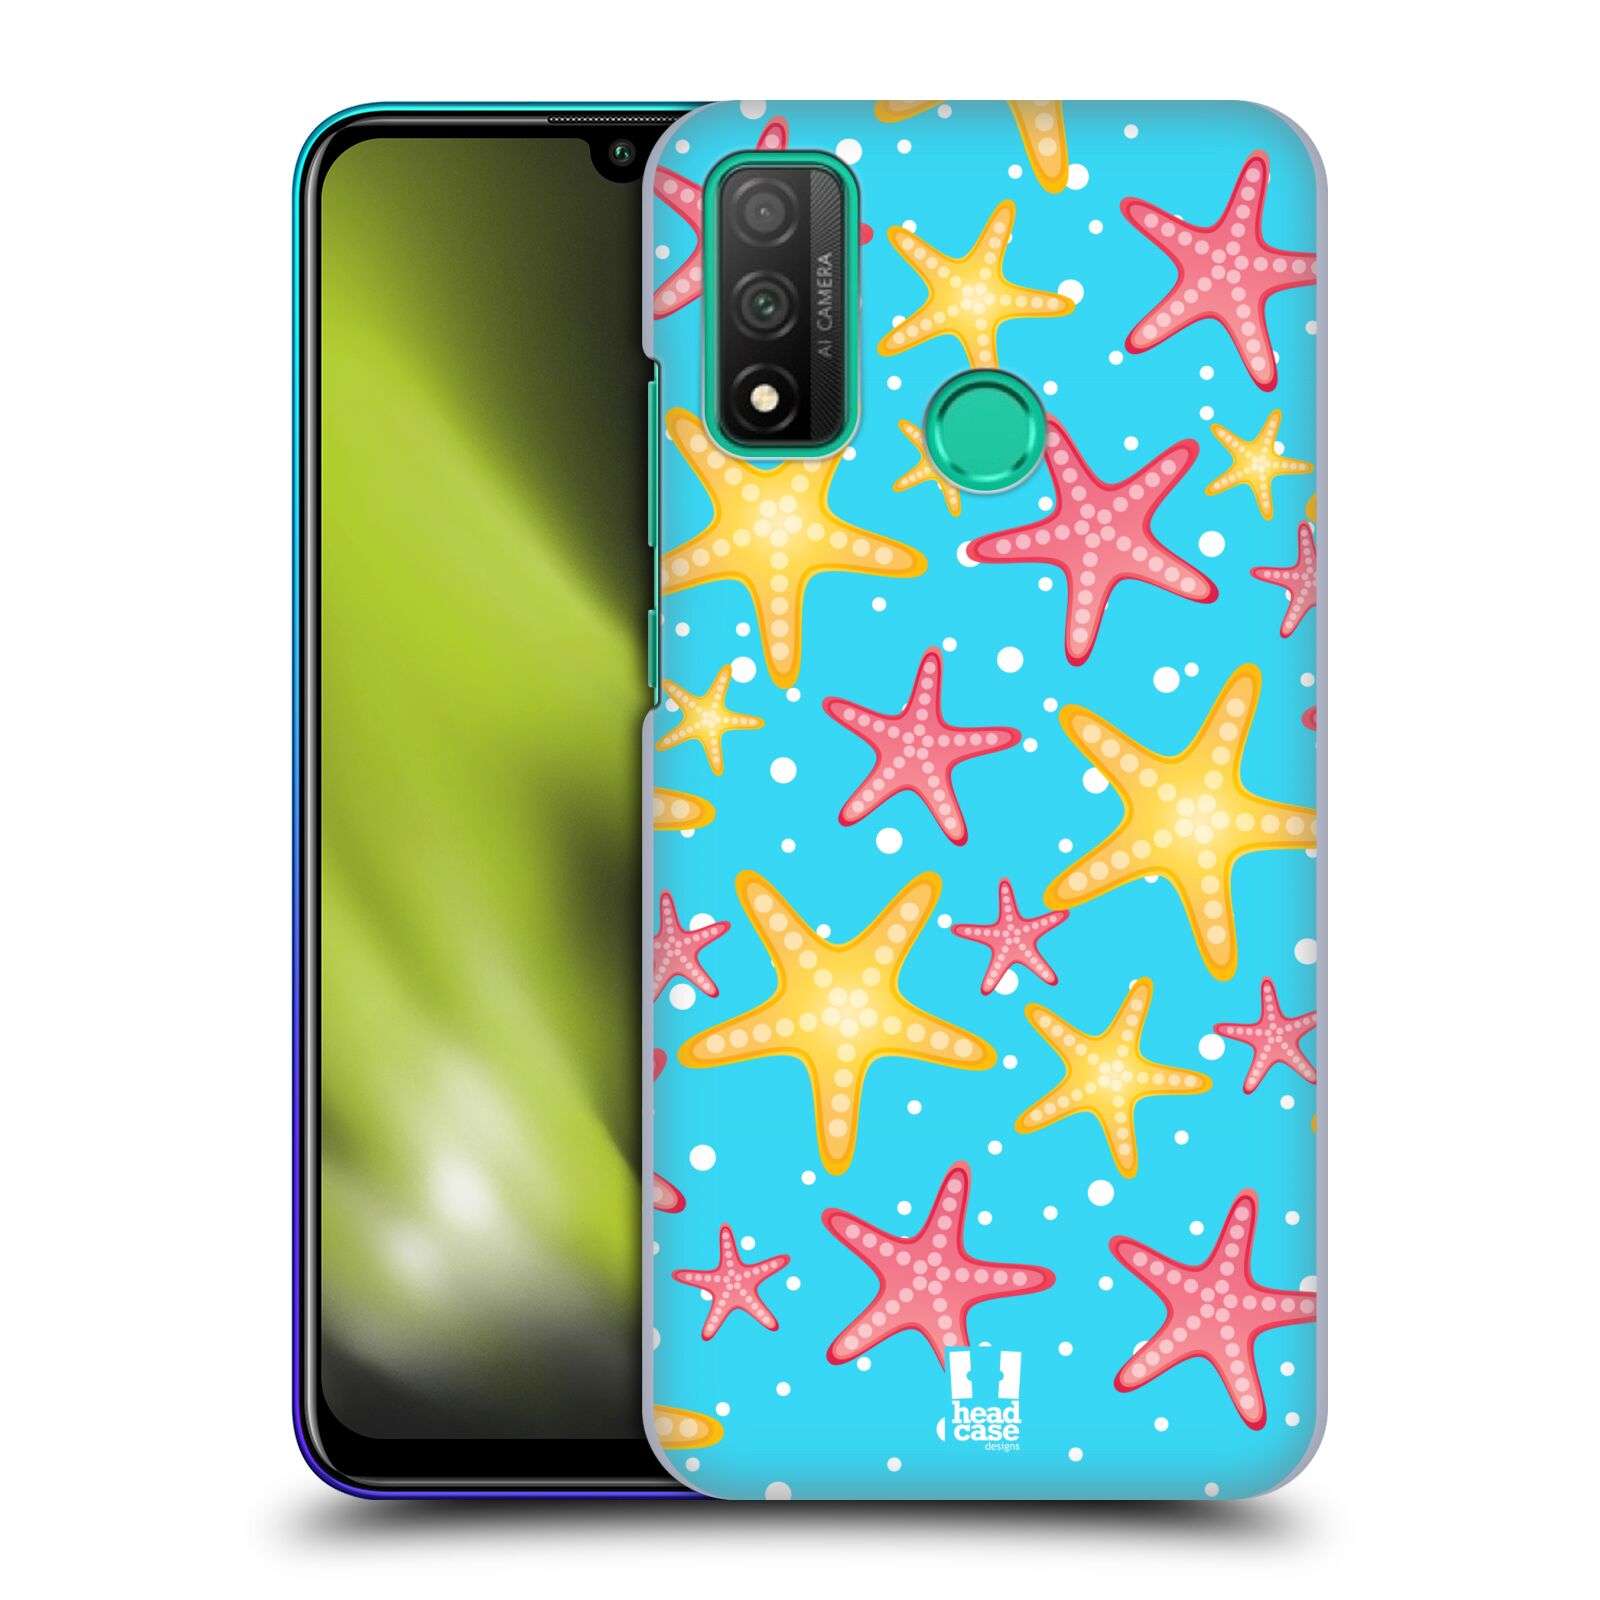 Zadní obal pro mobil Huawei P SMART 2020 - HEAD CASE - kreslený mořský vzor hvězda